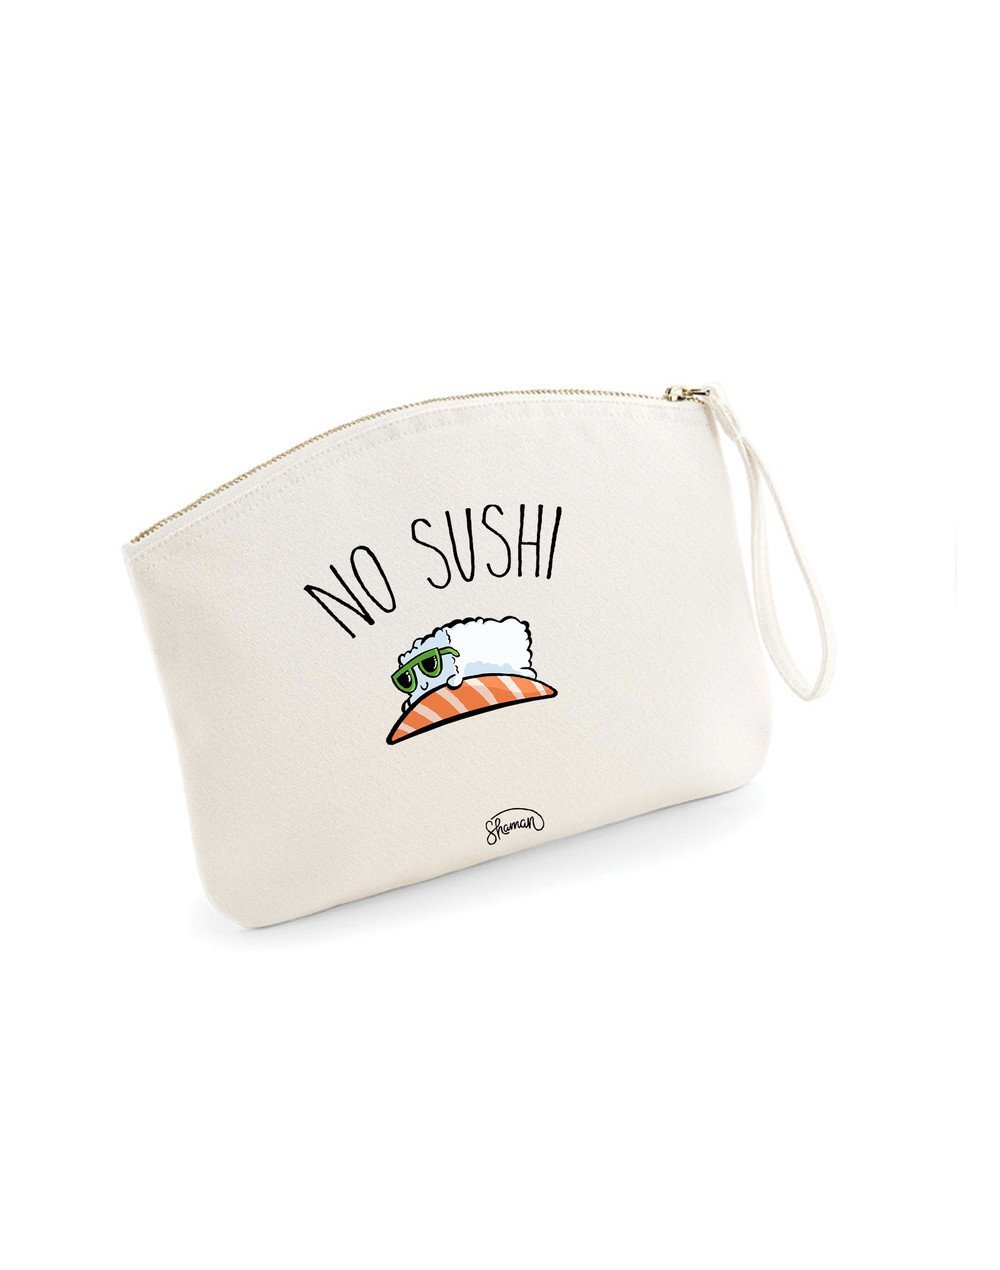 Pochette "No sushi"